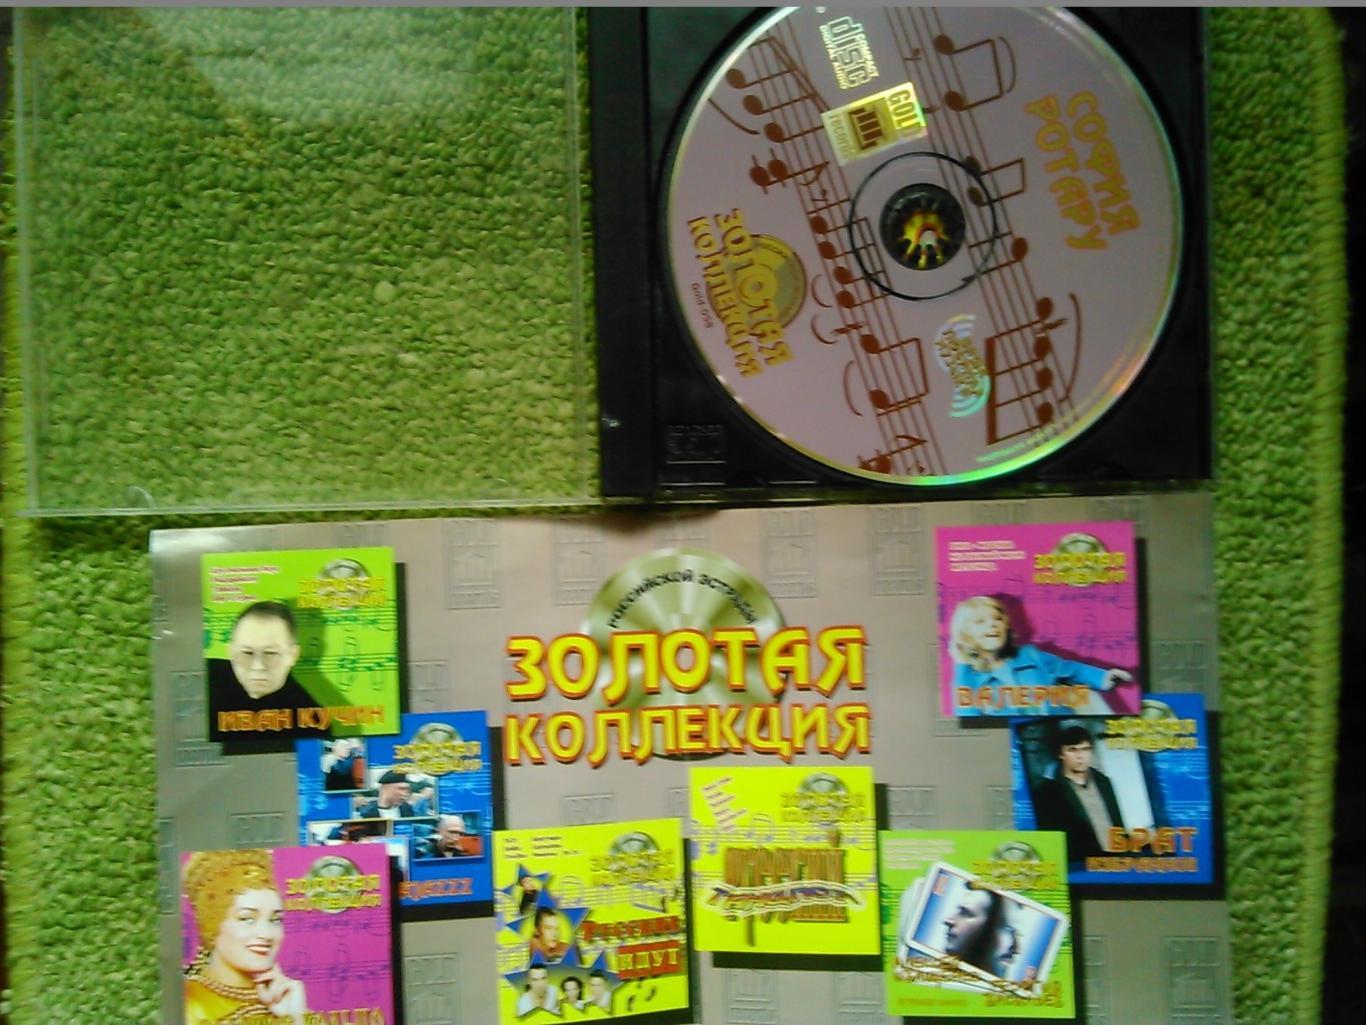 Аудио CD компакт диск София РОТАРУ -Золотая коллекция. Оптом скидки до 47%! 1